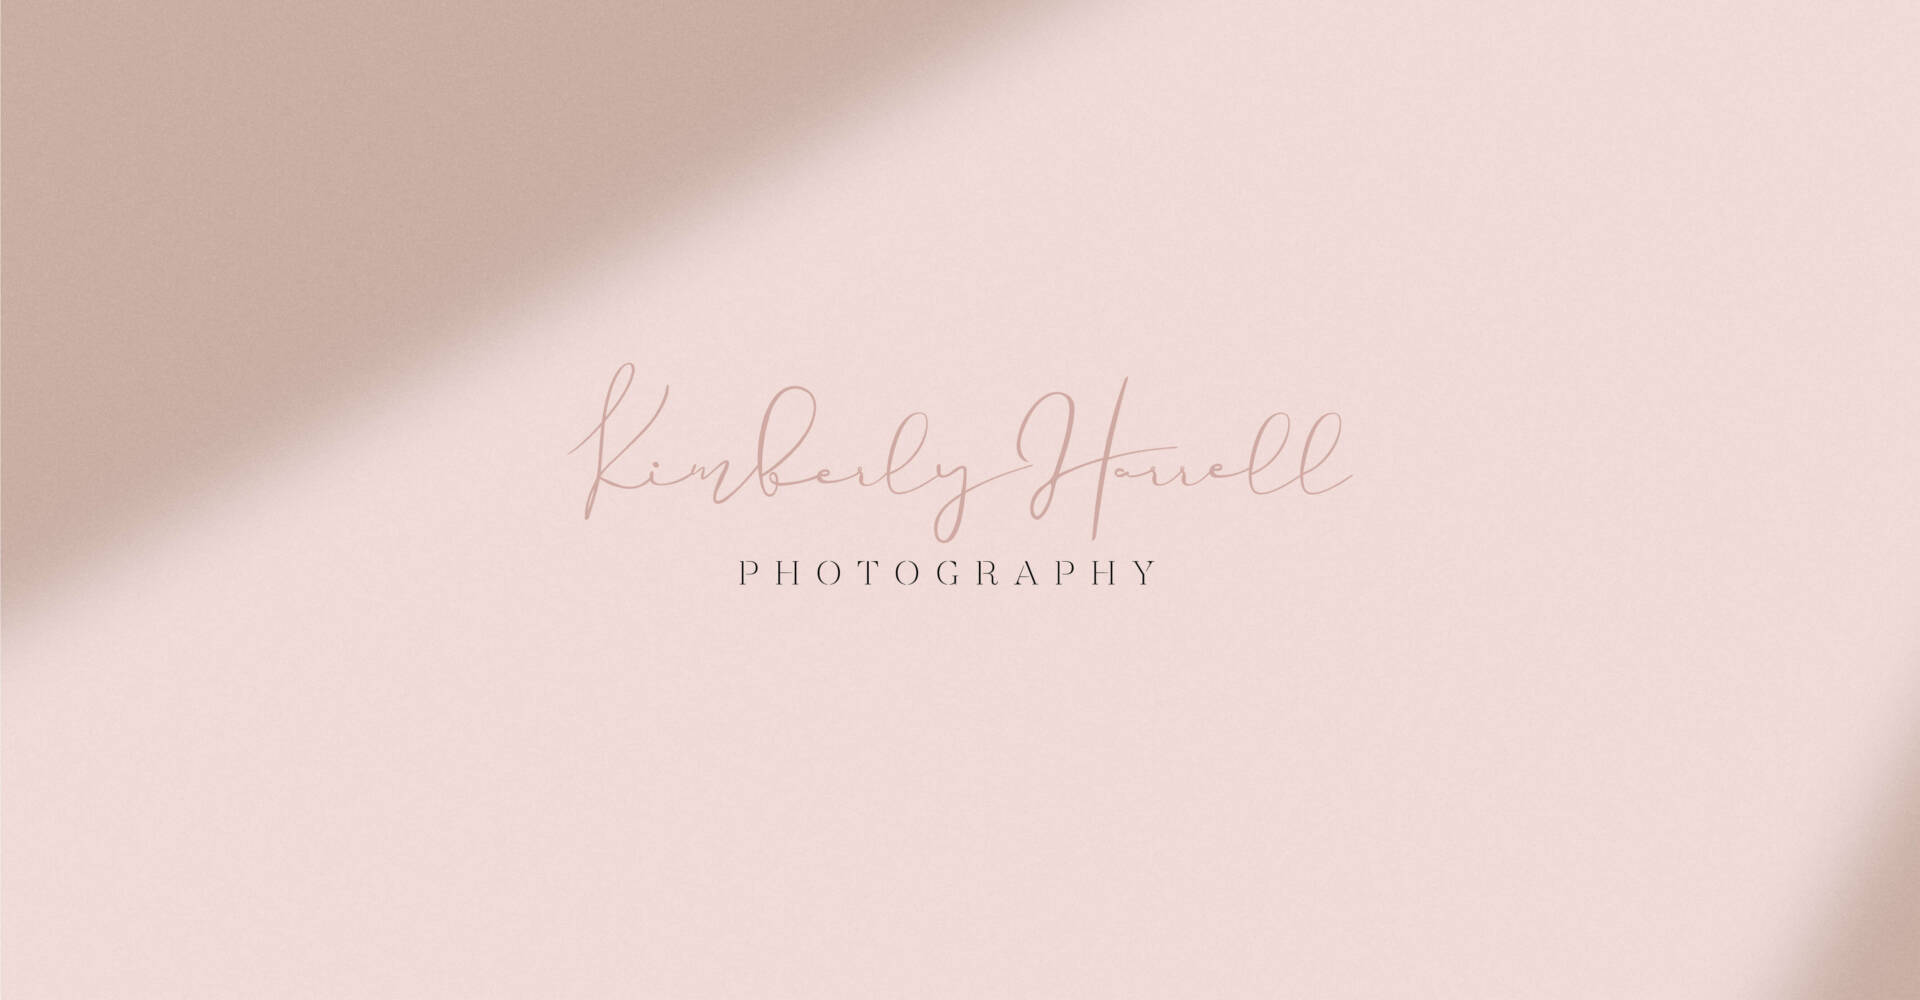 Kimberly Harrell Photography